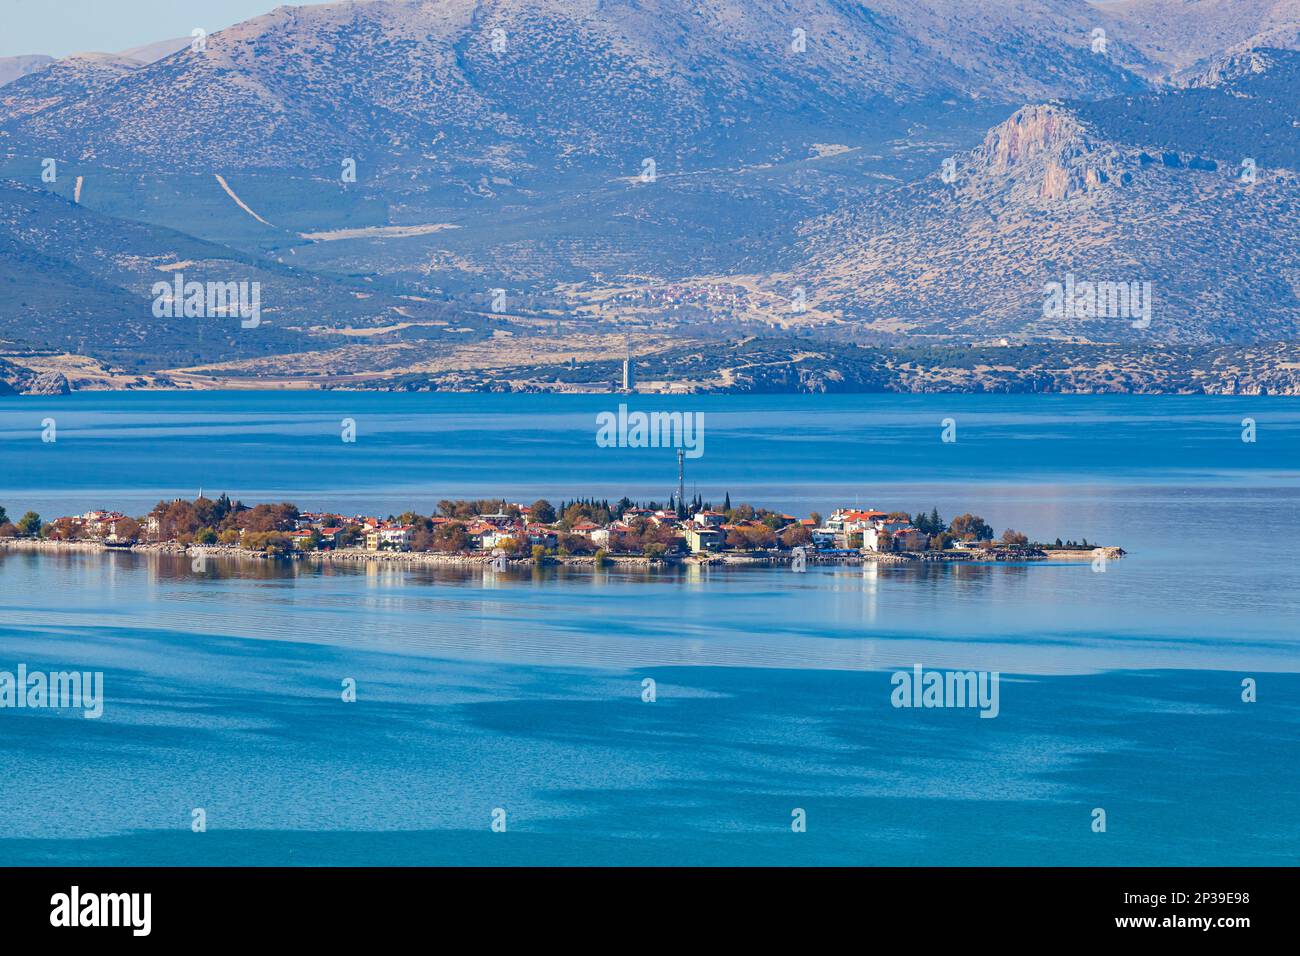 Luftaufnahme der historischen Stadt Egirdir im wunderschönen blauen See Egirdir mit hohem Berg im Hintergrund in der Provinz Isparta, Türkei. Stockfoto